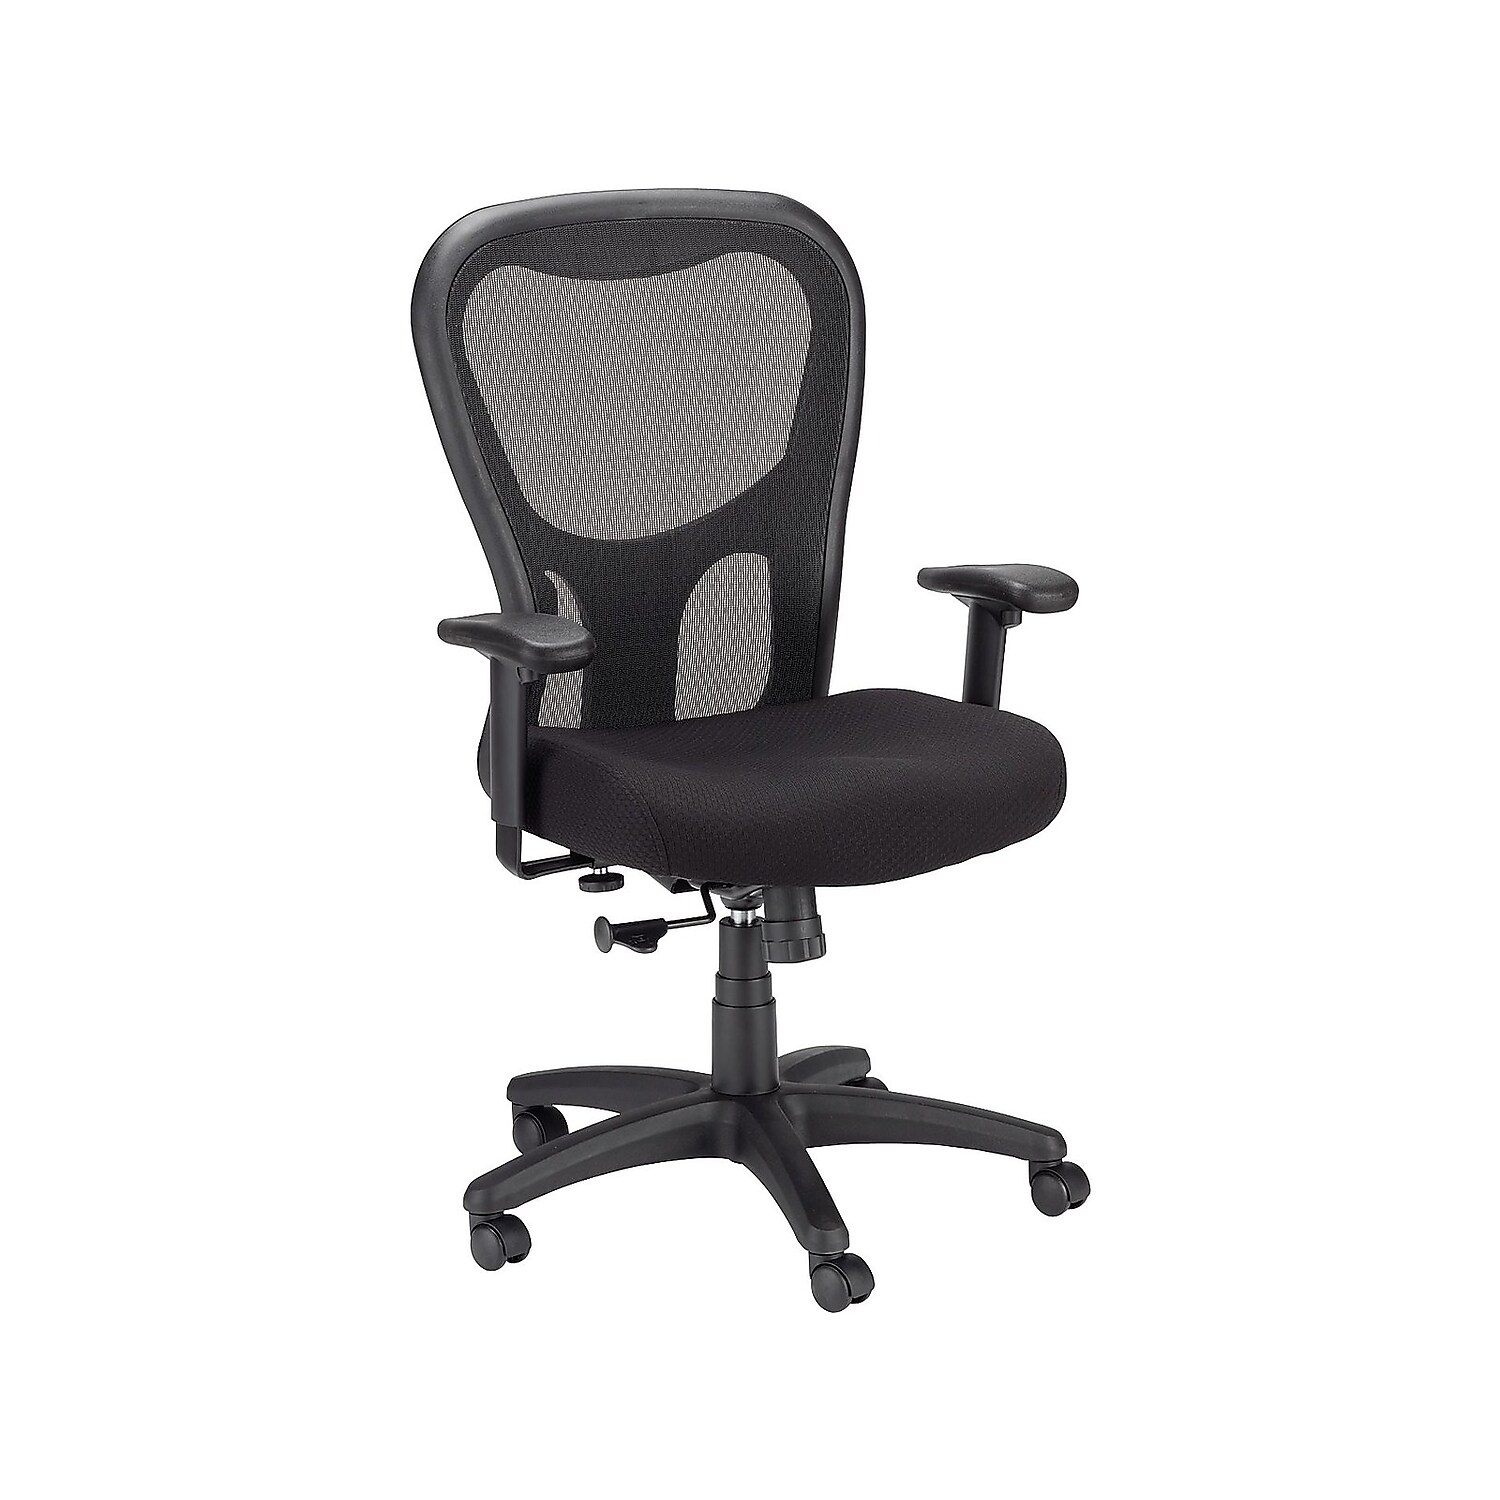 Tempur-Pedic TP9000 Mesh Task Chair Black (TP9000) 324021 - image 1 of 7